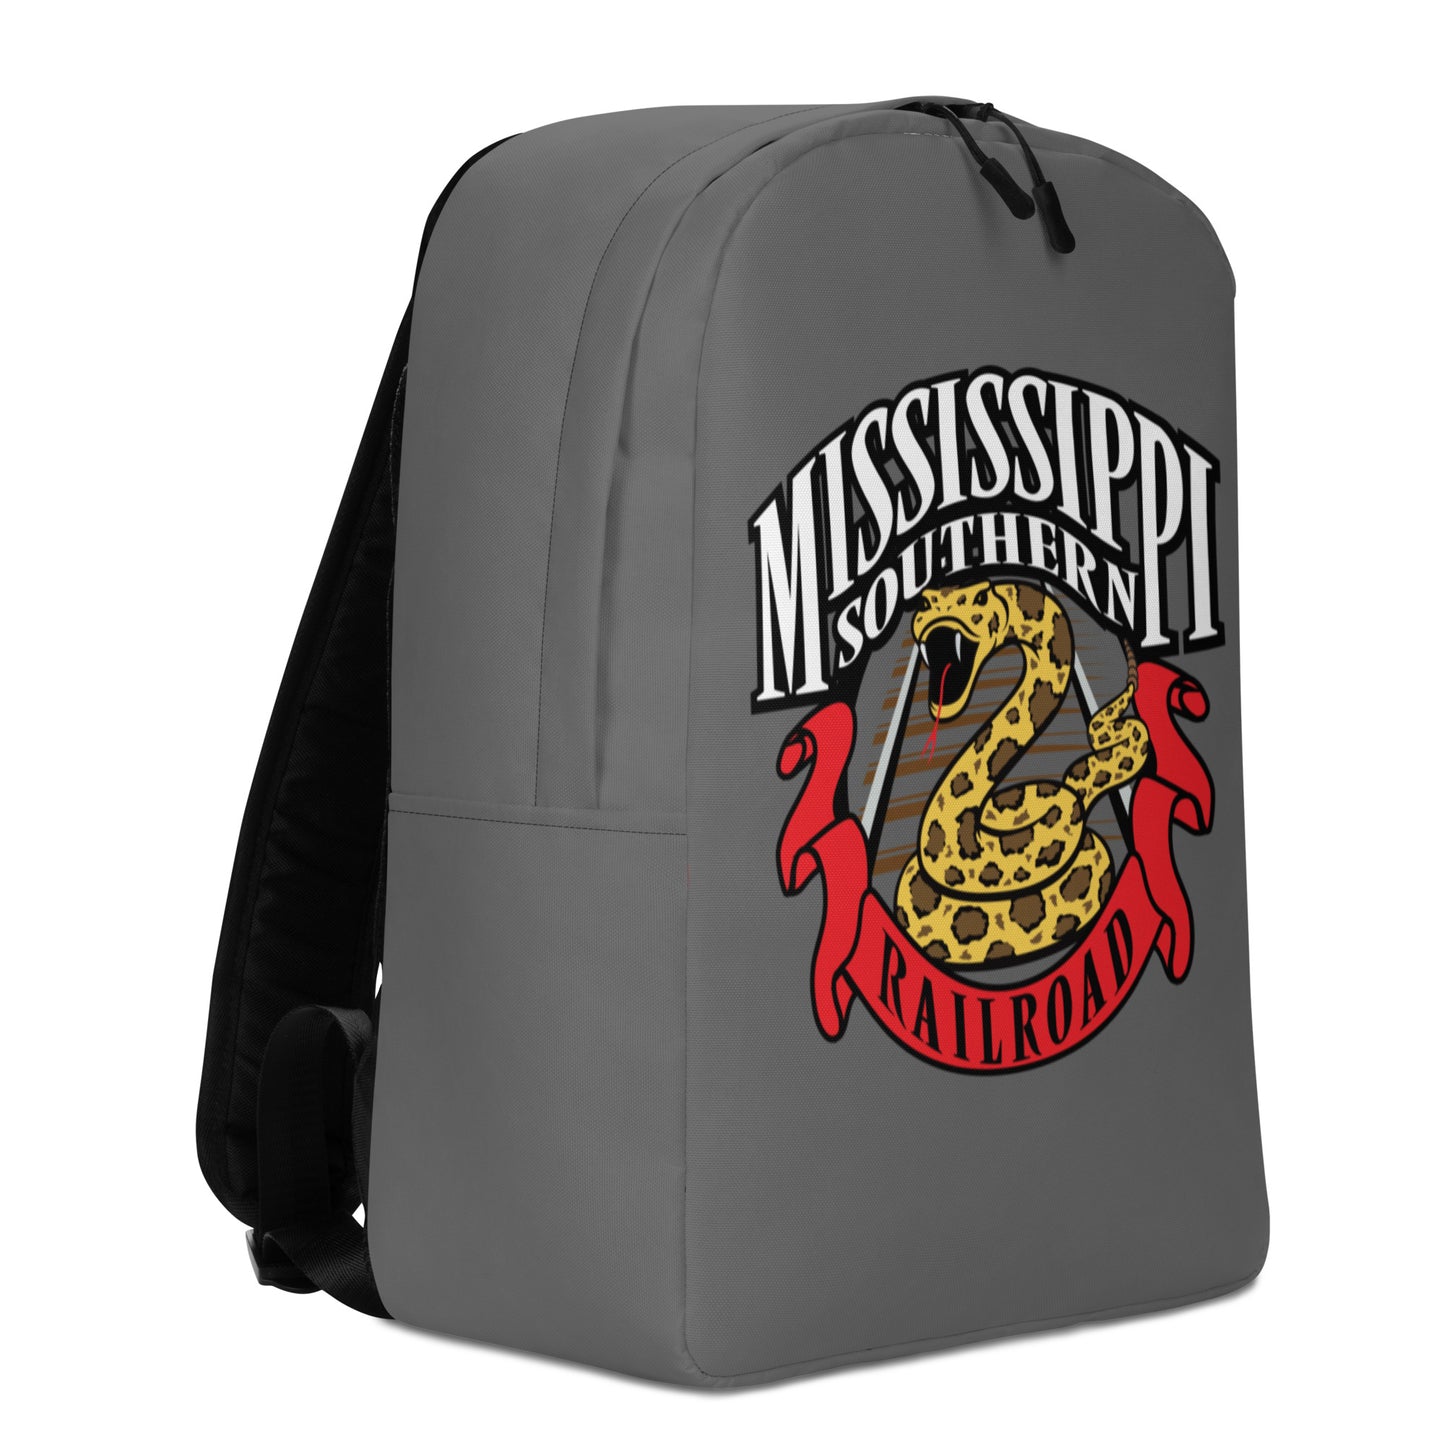 Mississippi Southern RR Minimalist Backpack - Broken Knuckle Apparel